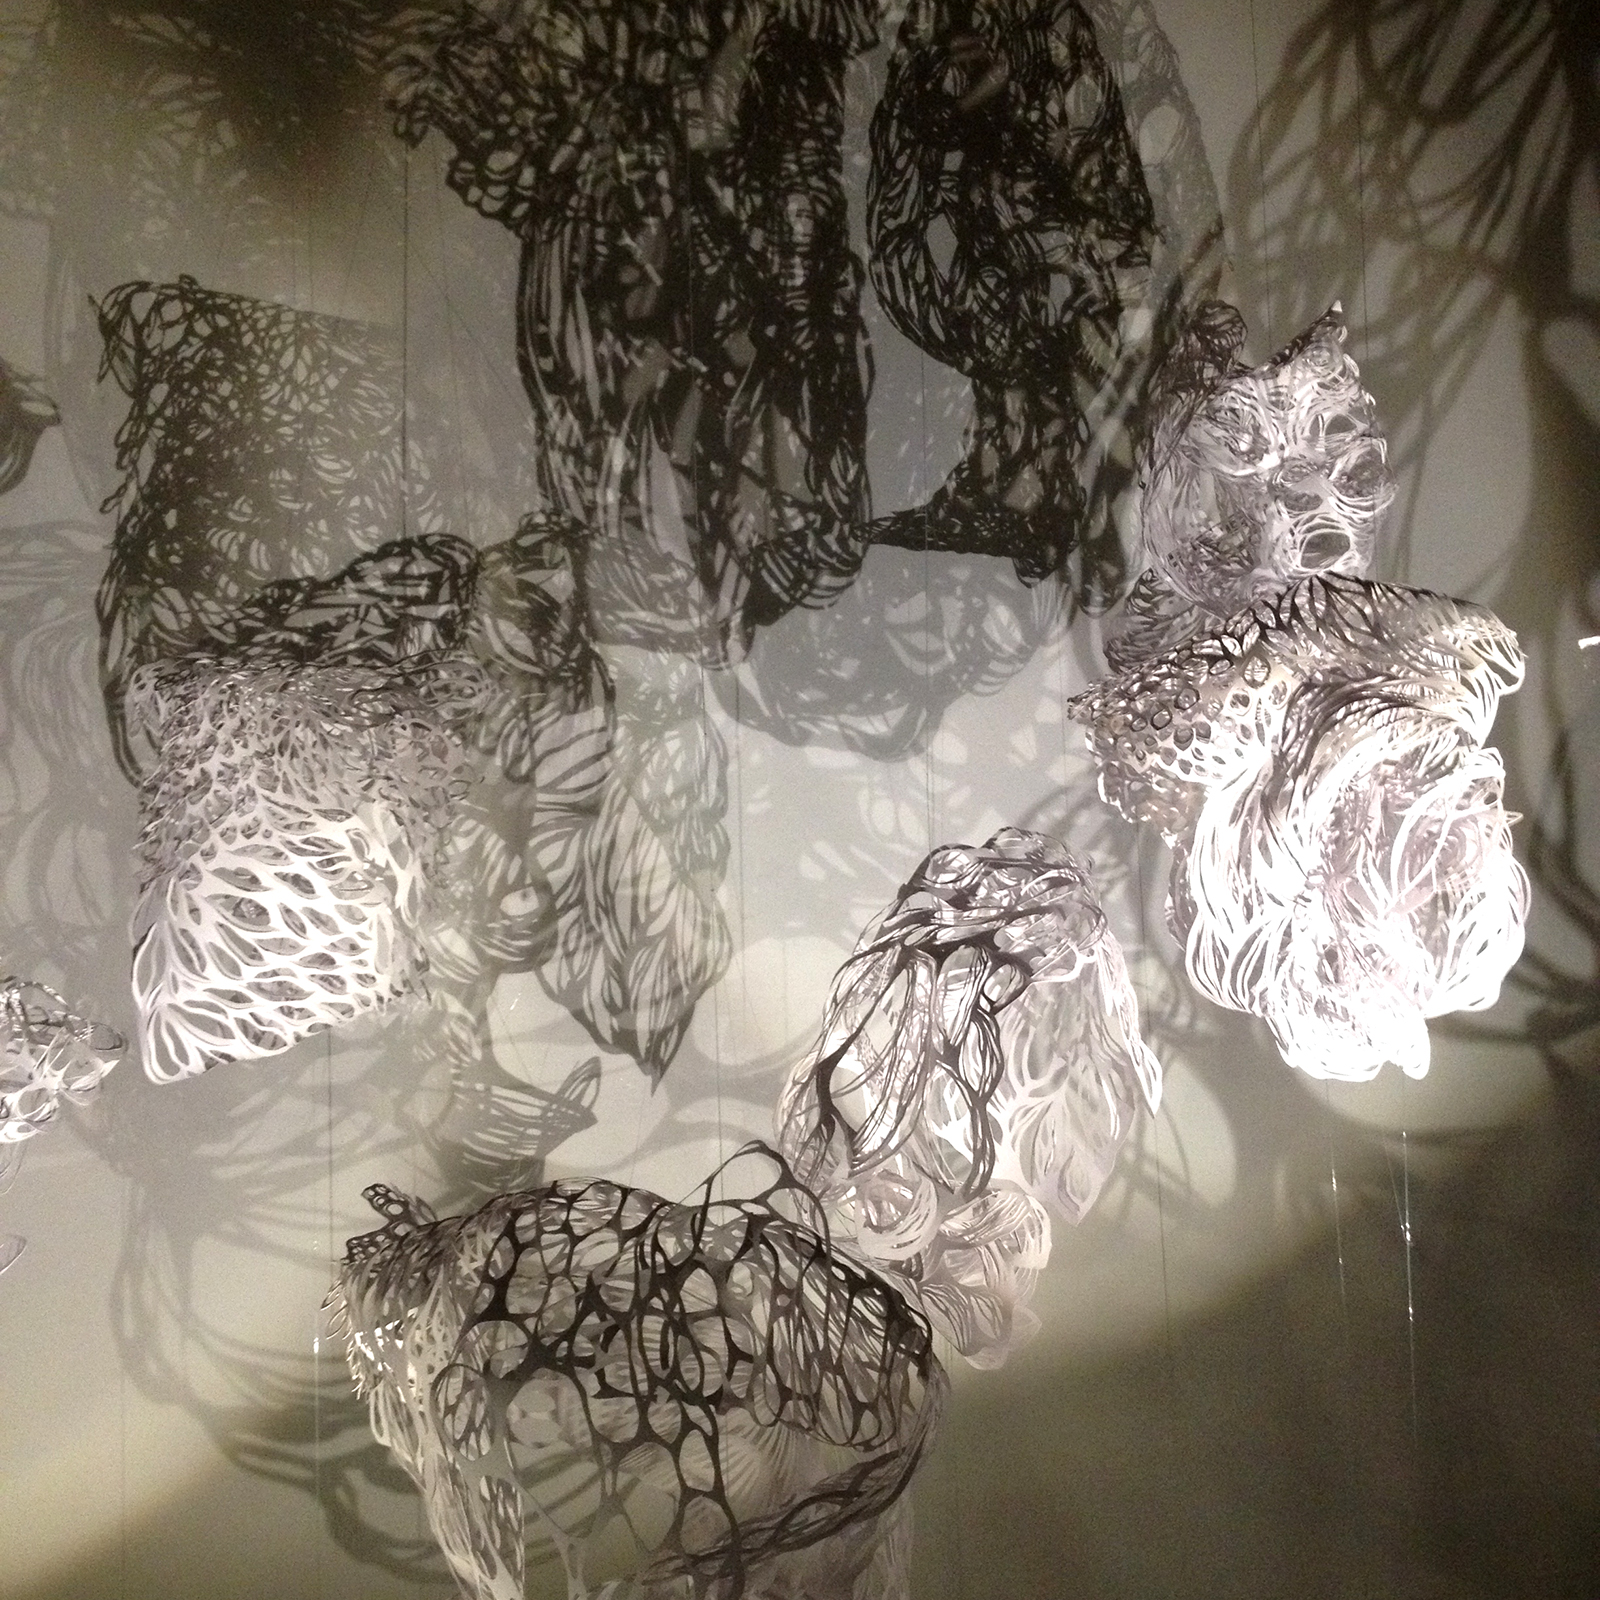 Installation théâtre d'ombres composée de 6 volumes "nuages" en papier découpé tournant sur eux-même